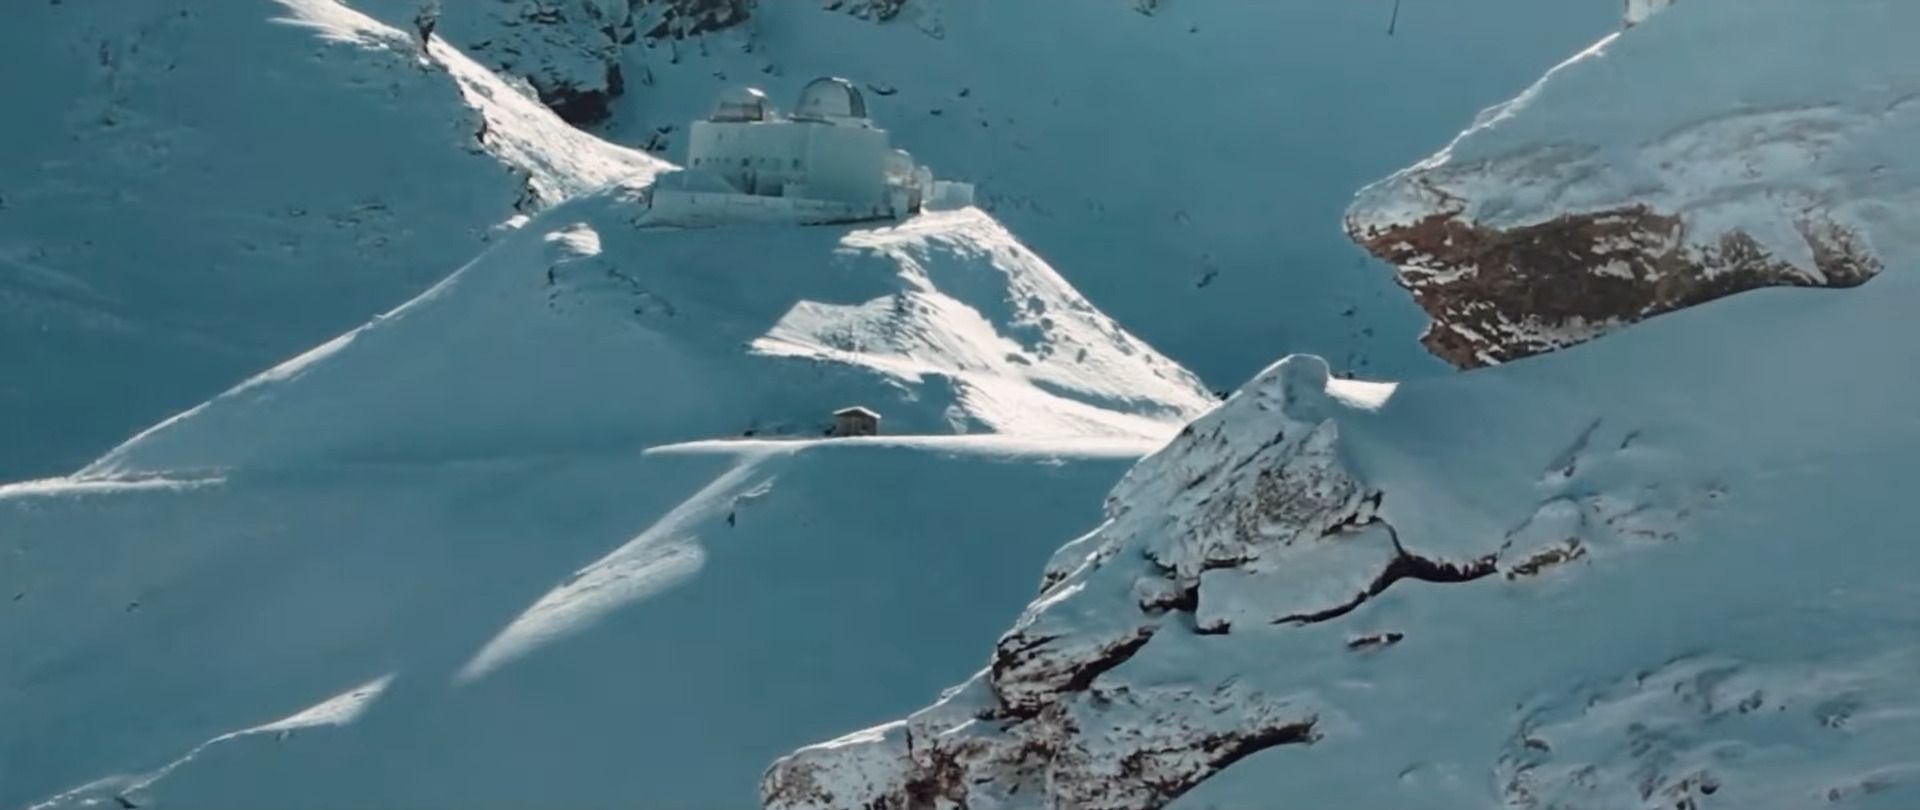 Bullet Skis: una nueva marca del Pirineo con tecnología espacial